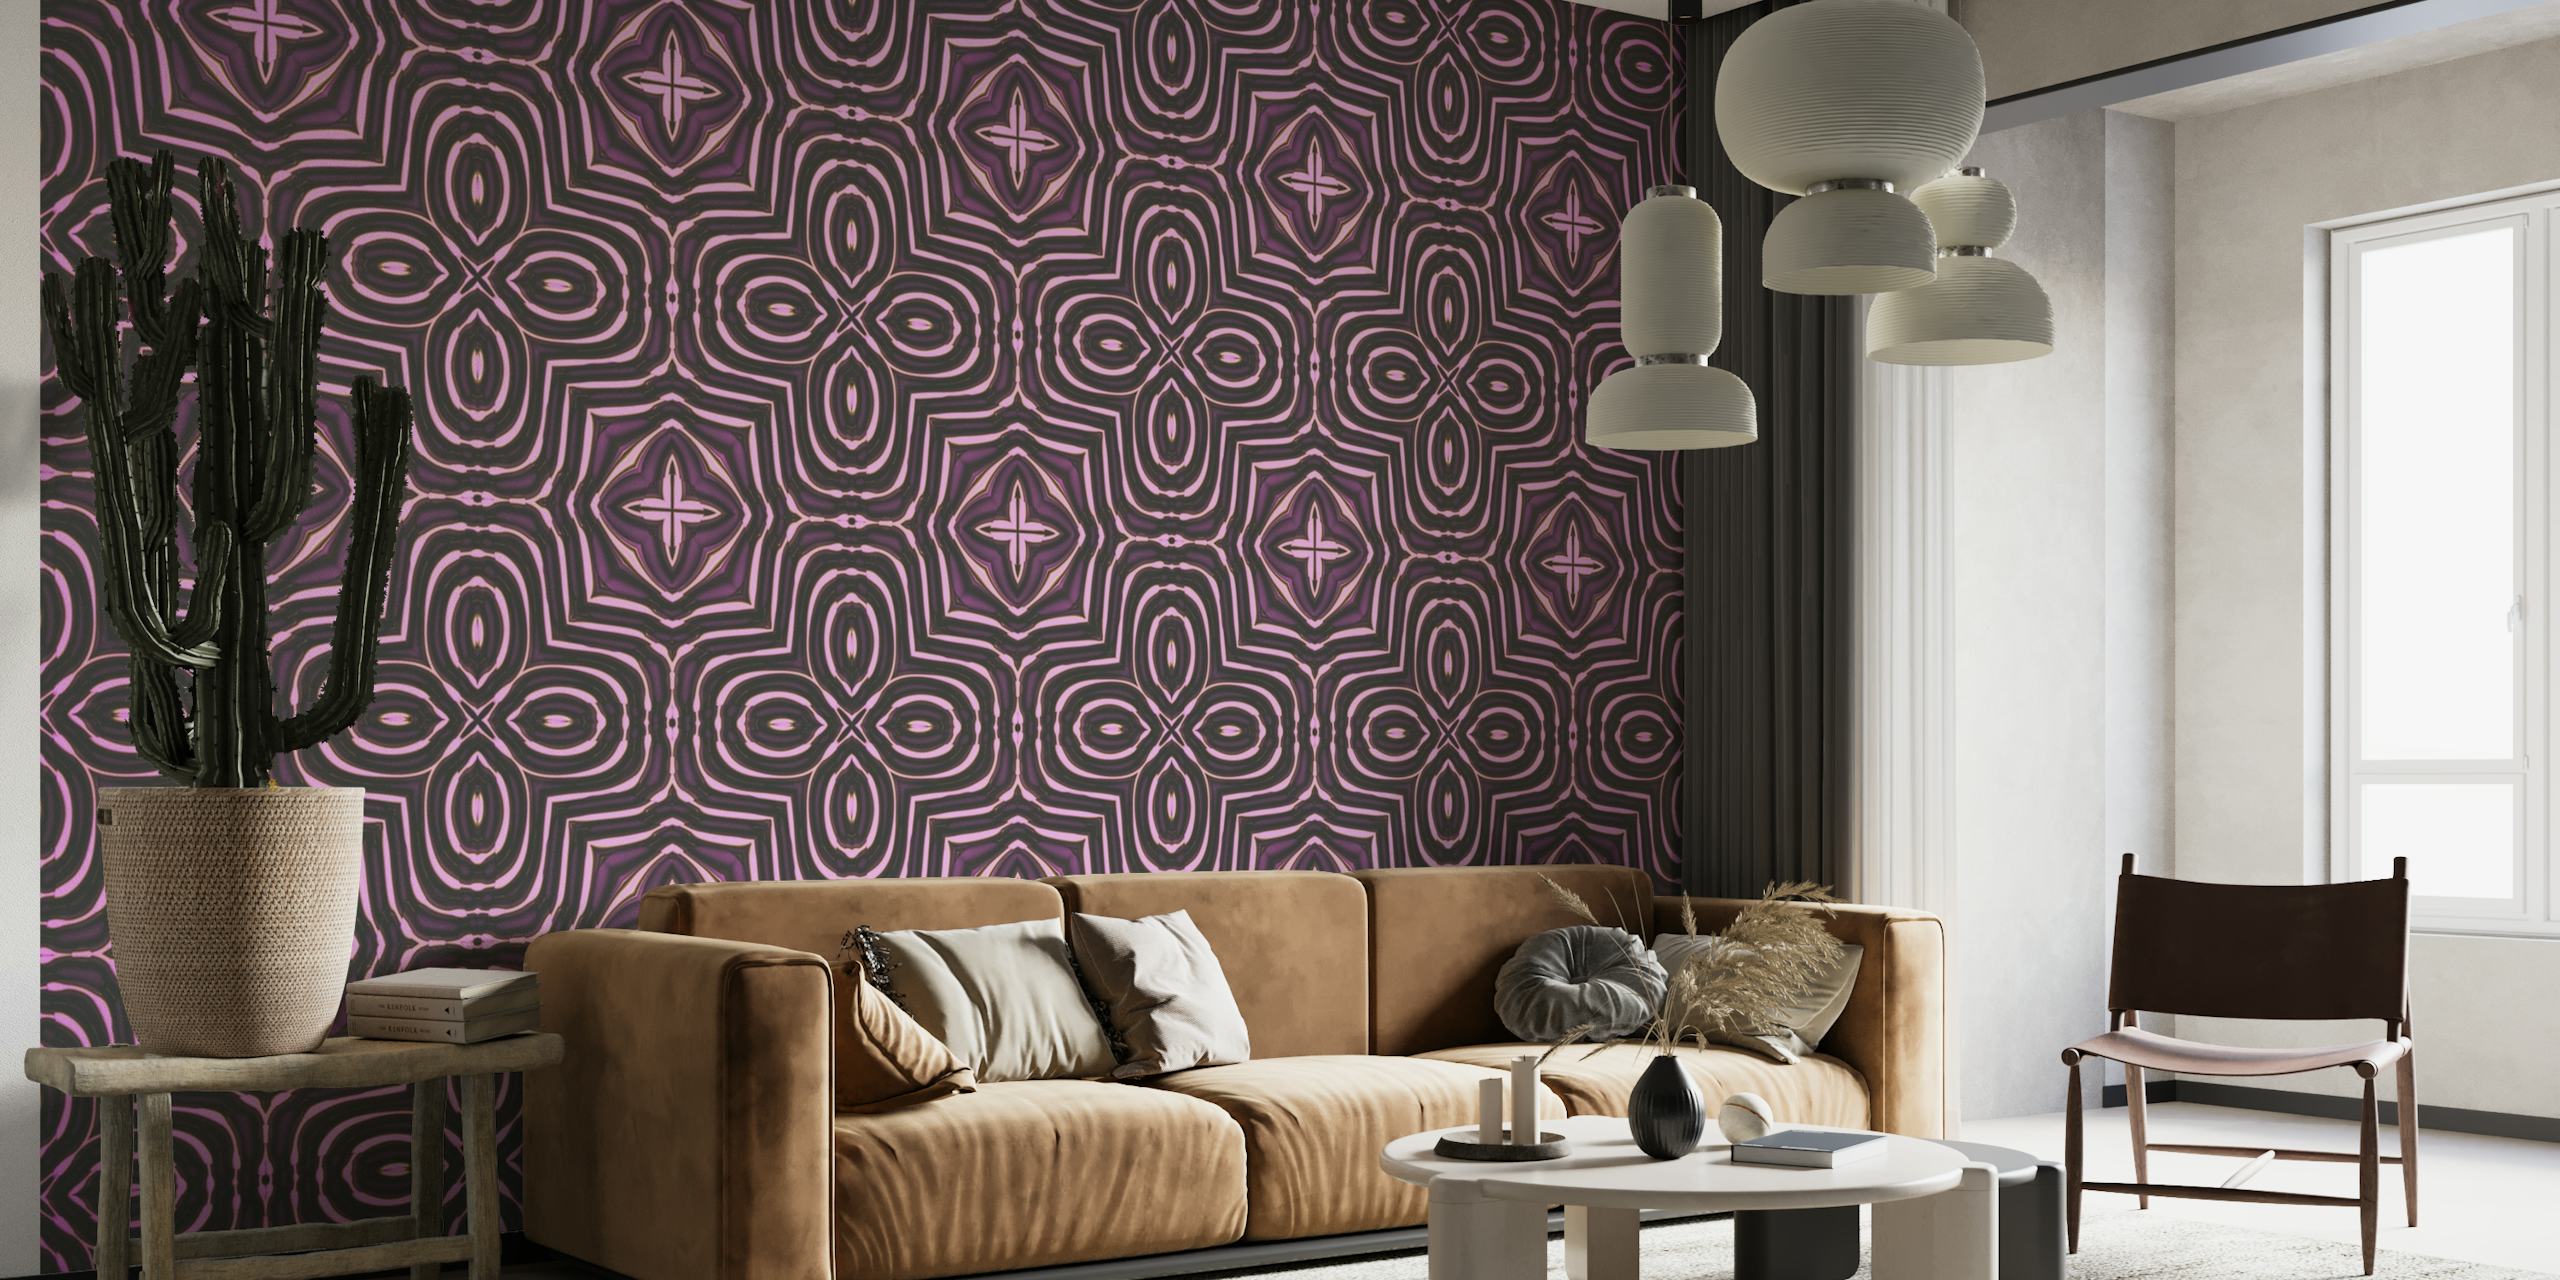 Mural de parede com padrão de azulejos orientais com desenhos geométricos intrincados em tons roxos